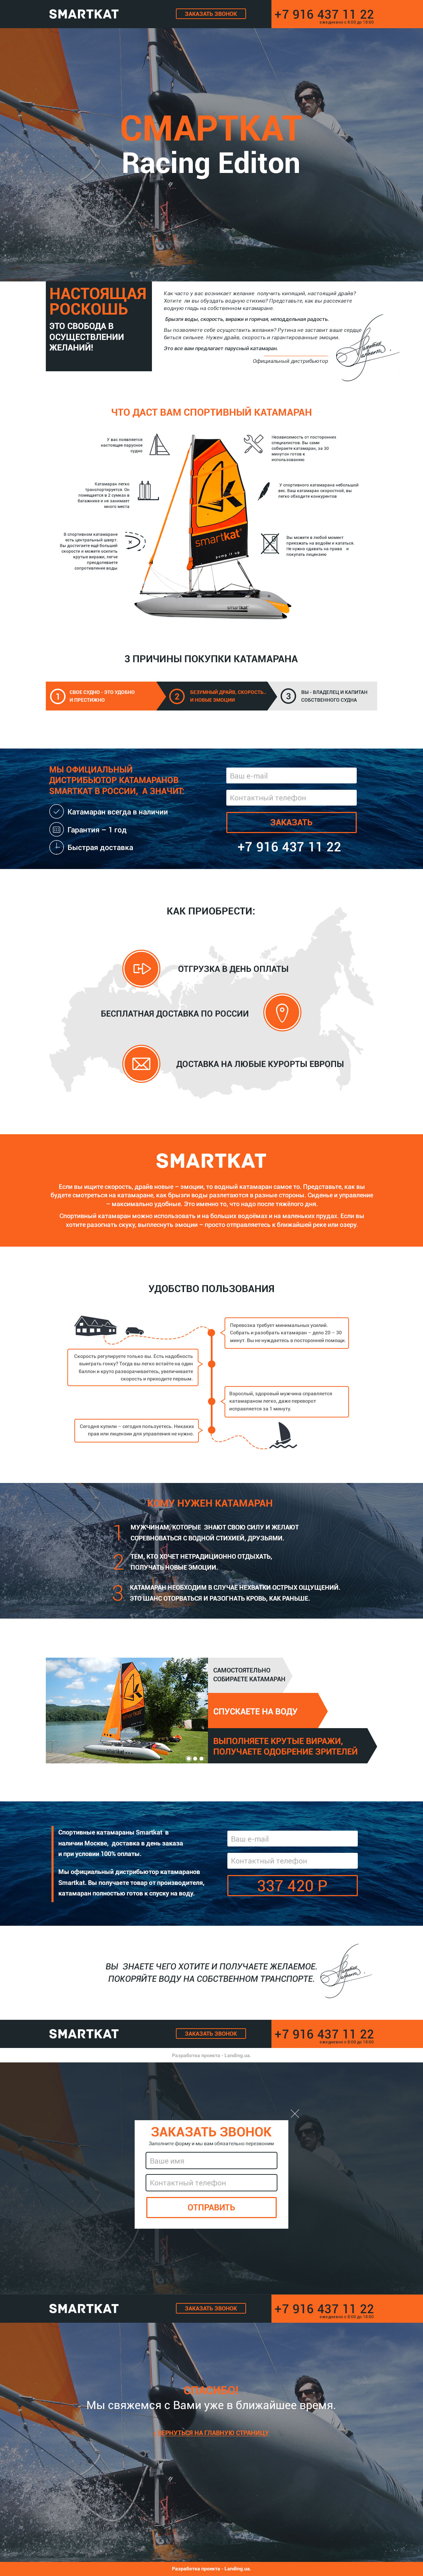 smartkat_index